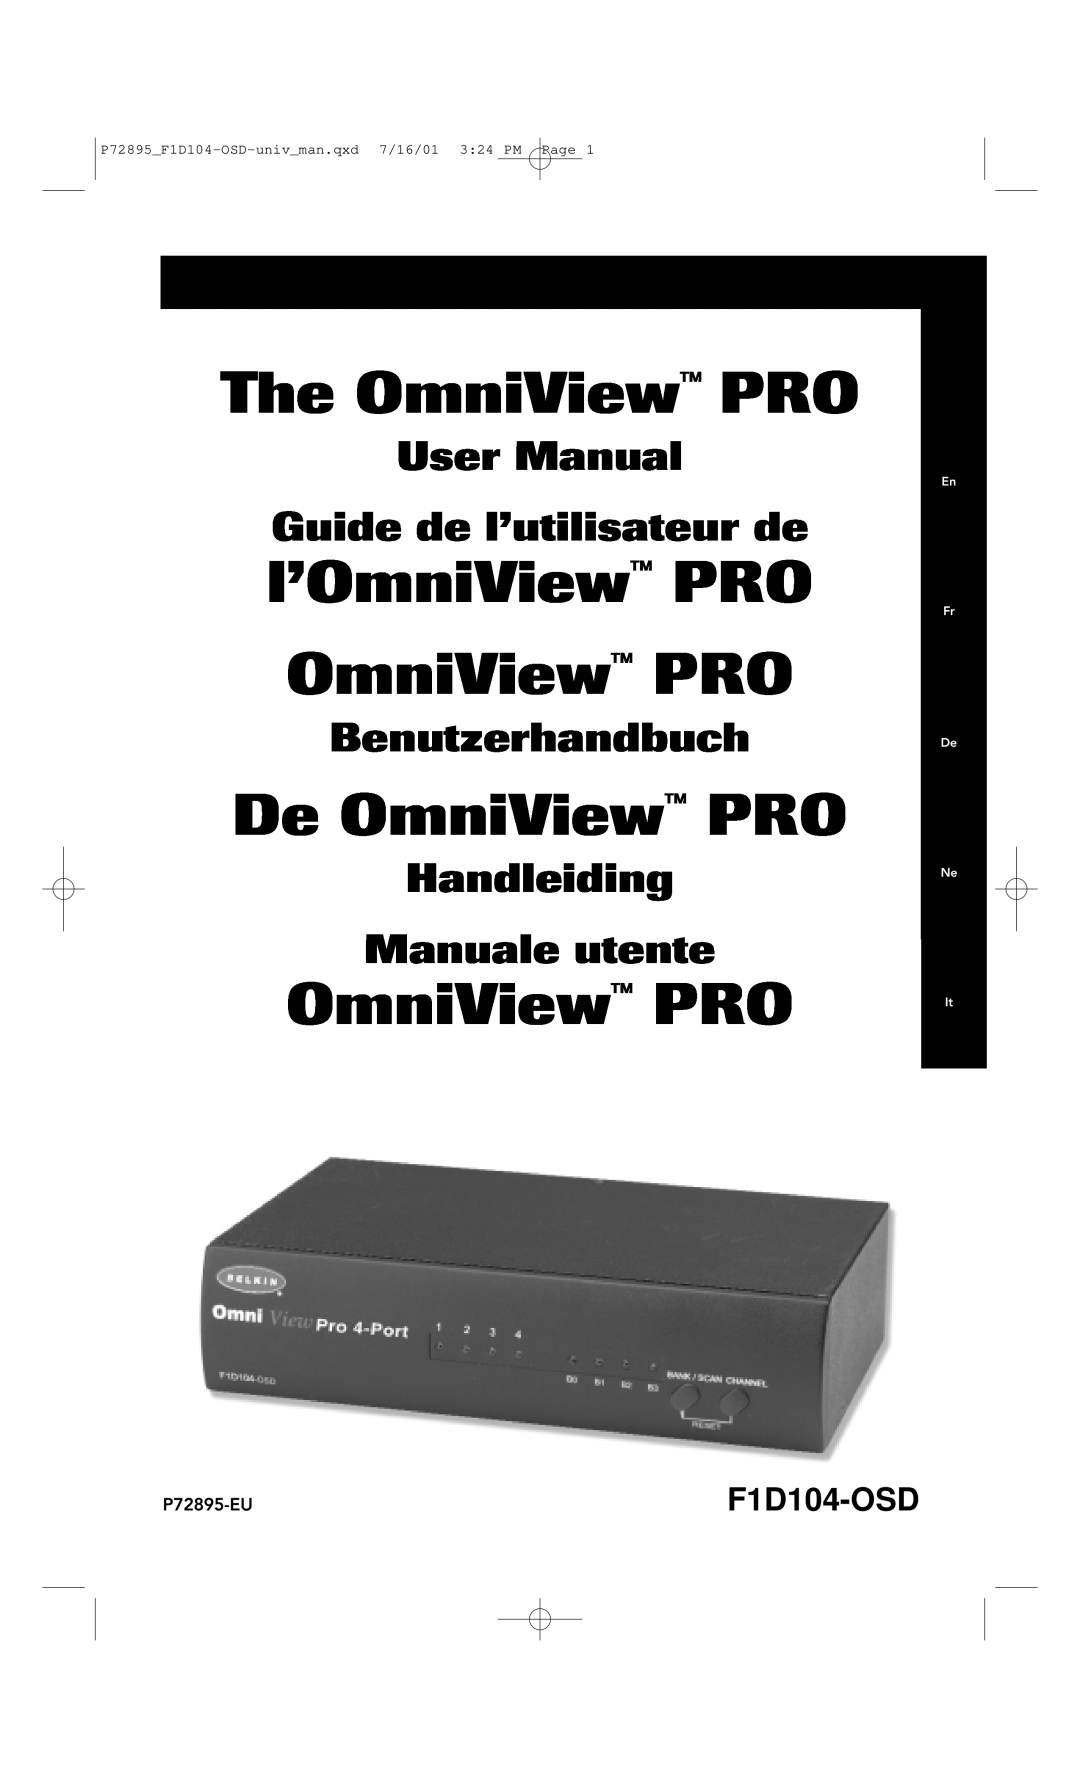 Belkin F1D104-OSD user manual The OmniView PRO, l’OmniView PRO OmniView PRO, De OmniView PRO, Benutzerhandbuch 